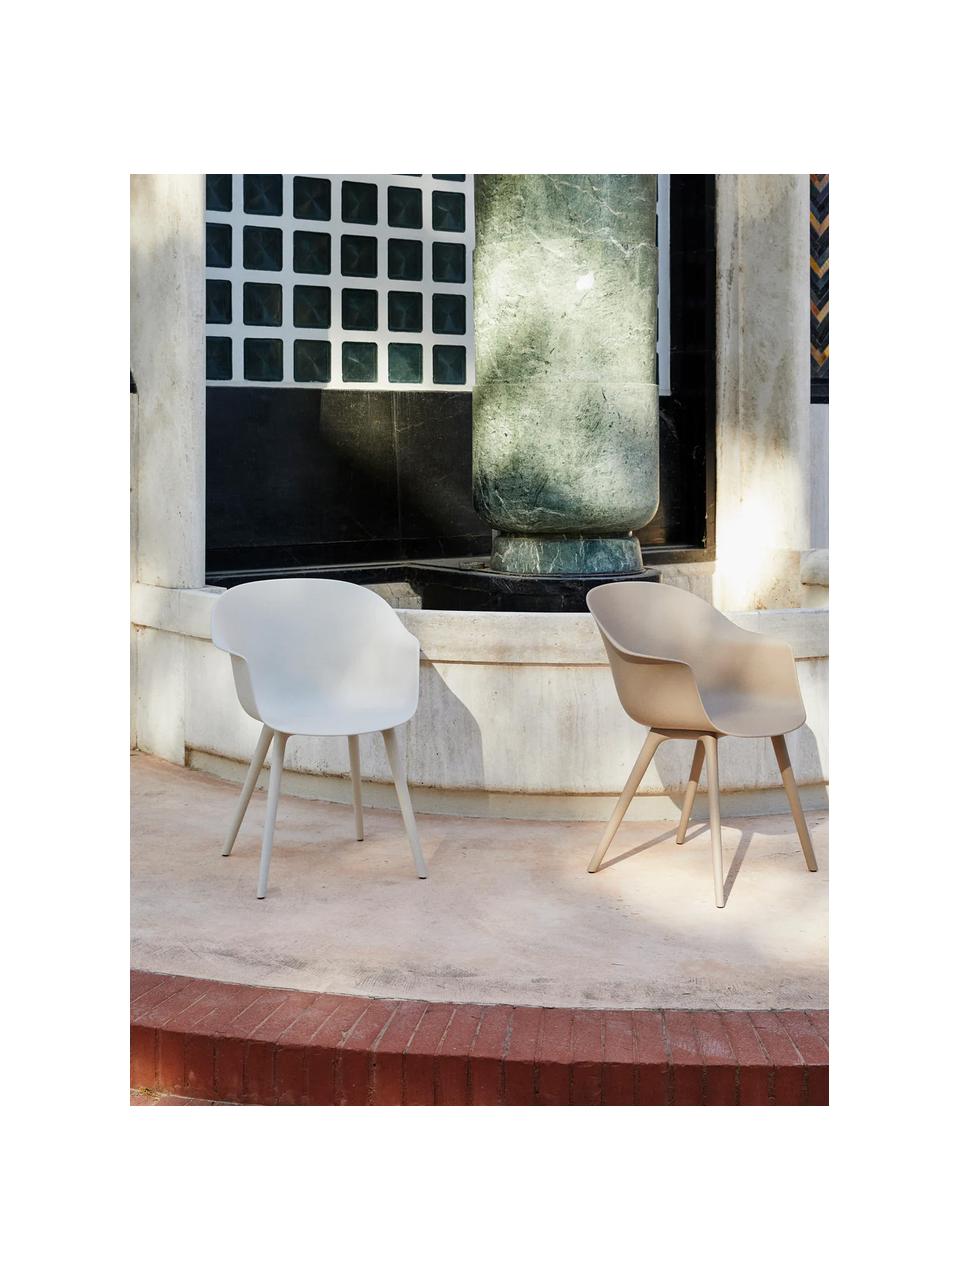 Krzesło ogrodowe z podłokietnikami Bat, Tworzywo sztuczne odporne na warunki atmosferyczne, Biały, matowy, S 61 x G 57 cm